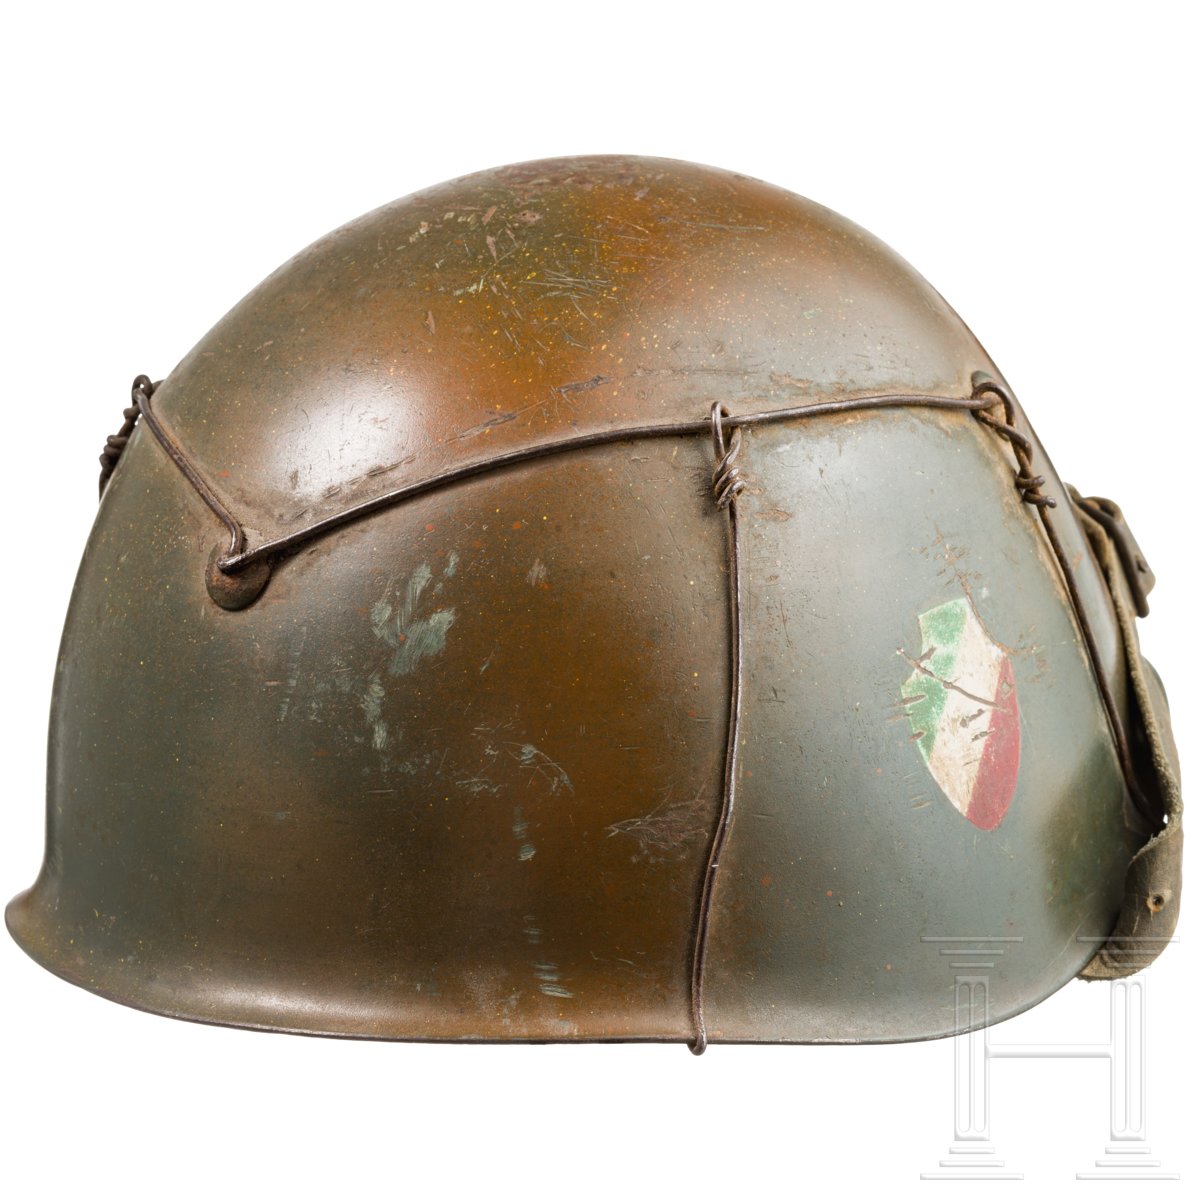 Stahlhelm der Divisione Italia in Tarnfarben, um 1943 - Image 4 of 4